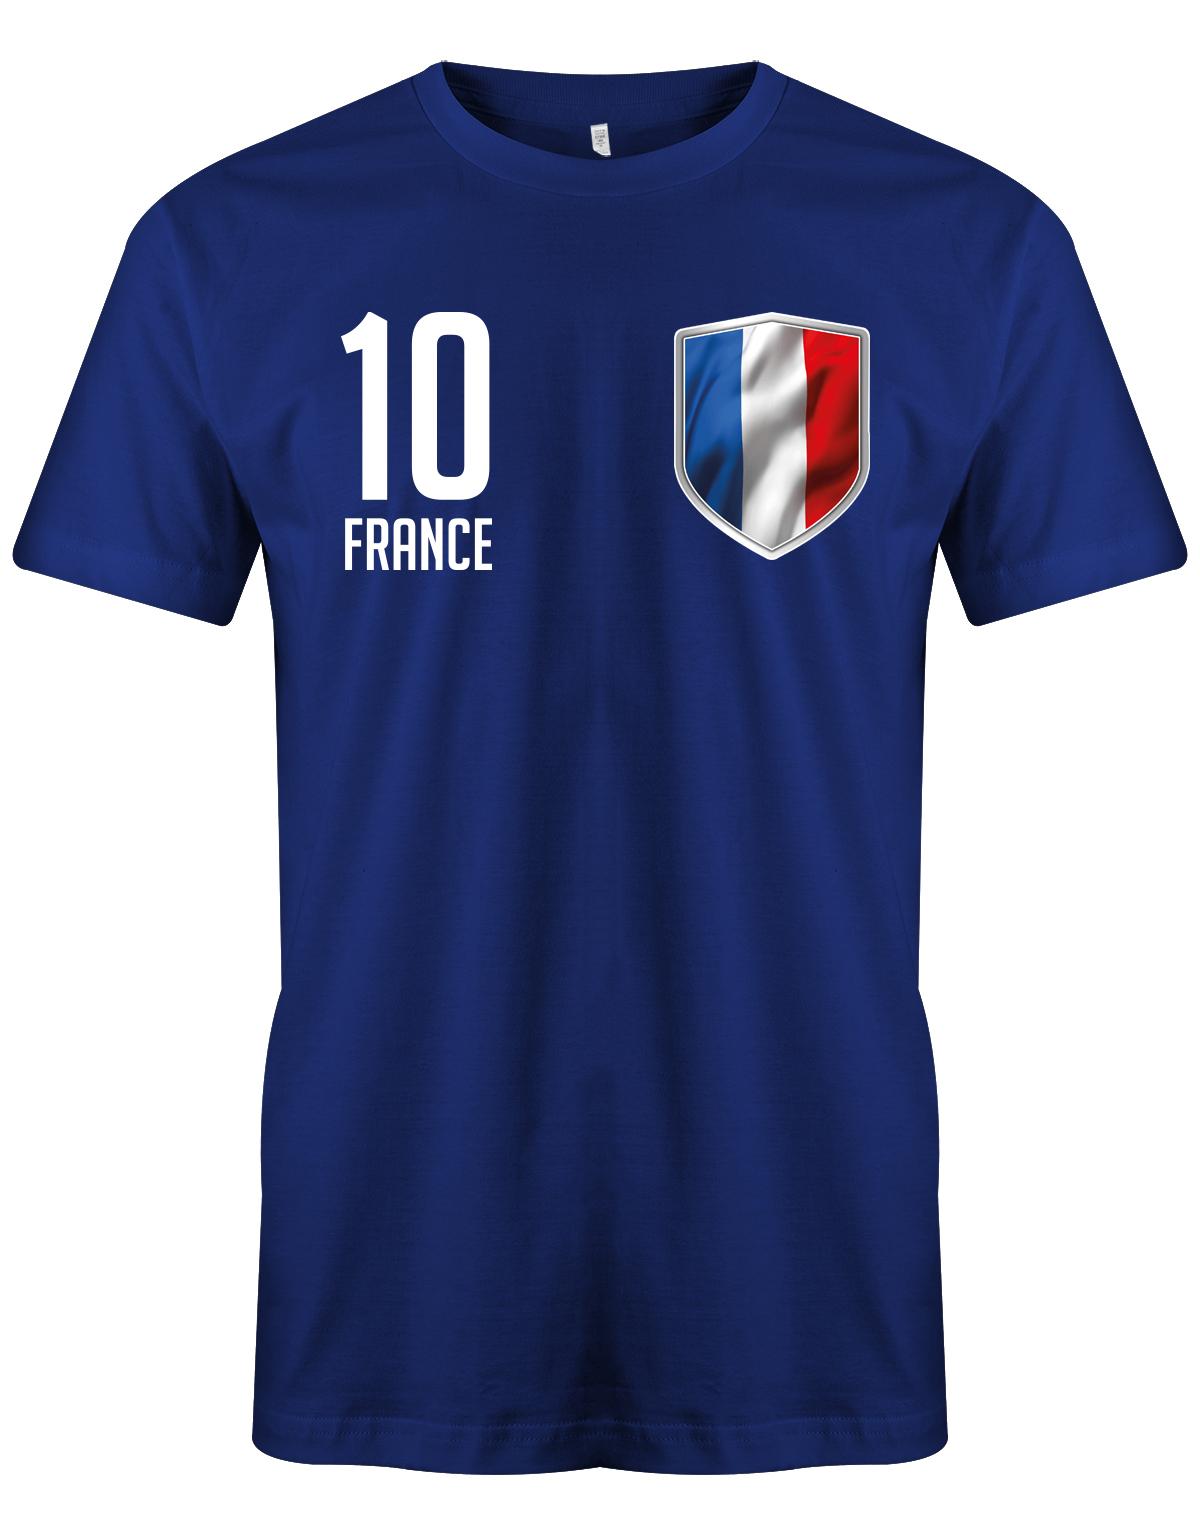 France-10-Herren-Shirt-Royalblau